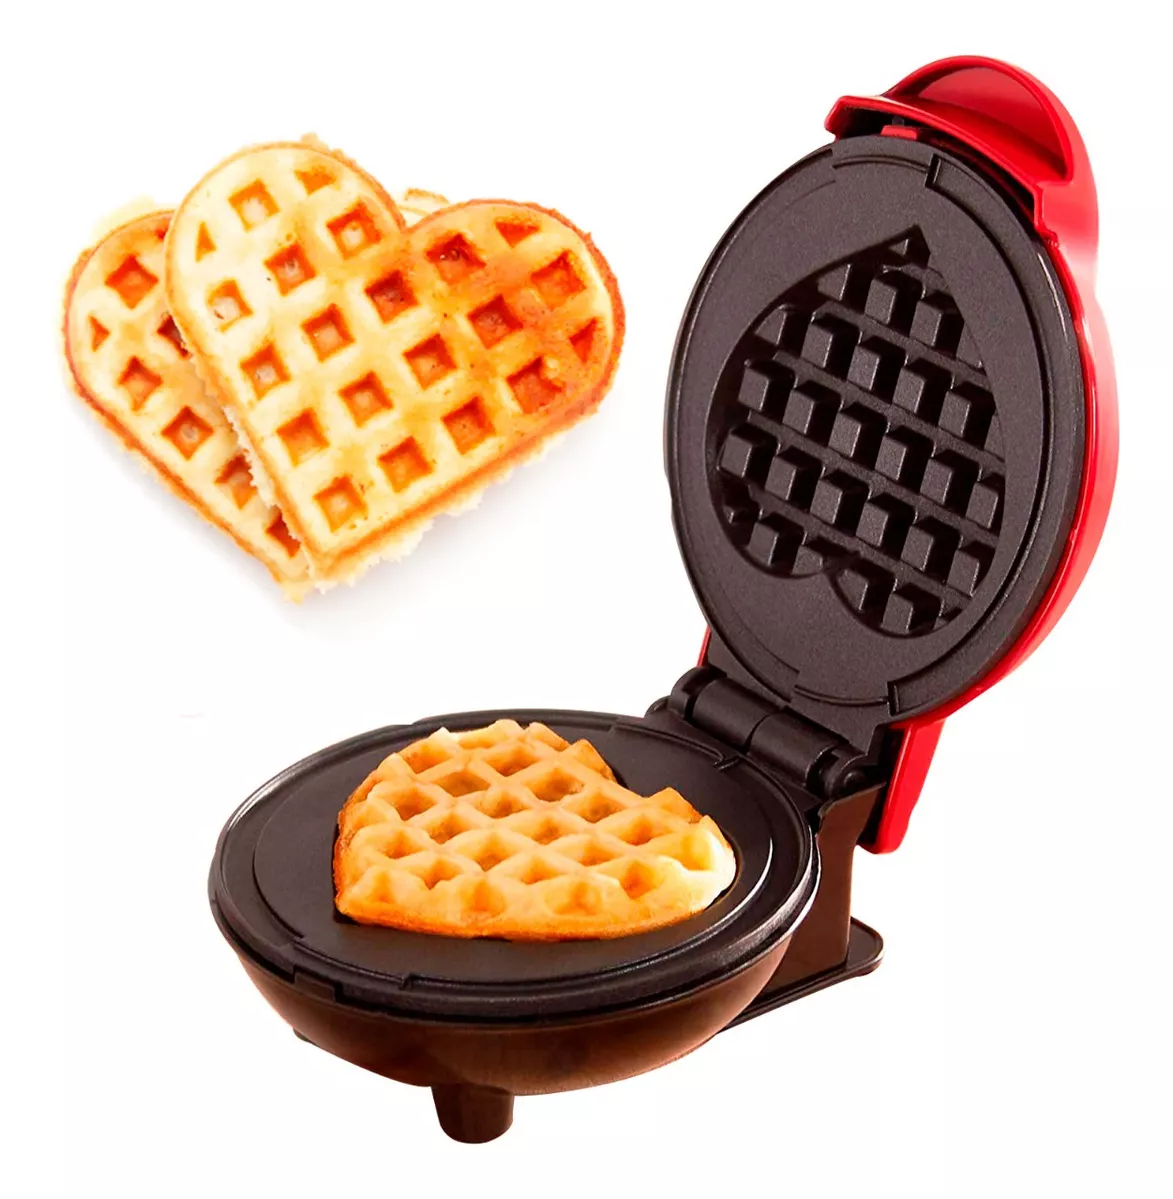 Segunda imagem para pesquisa de maquina mini waffle